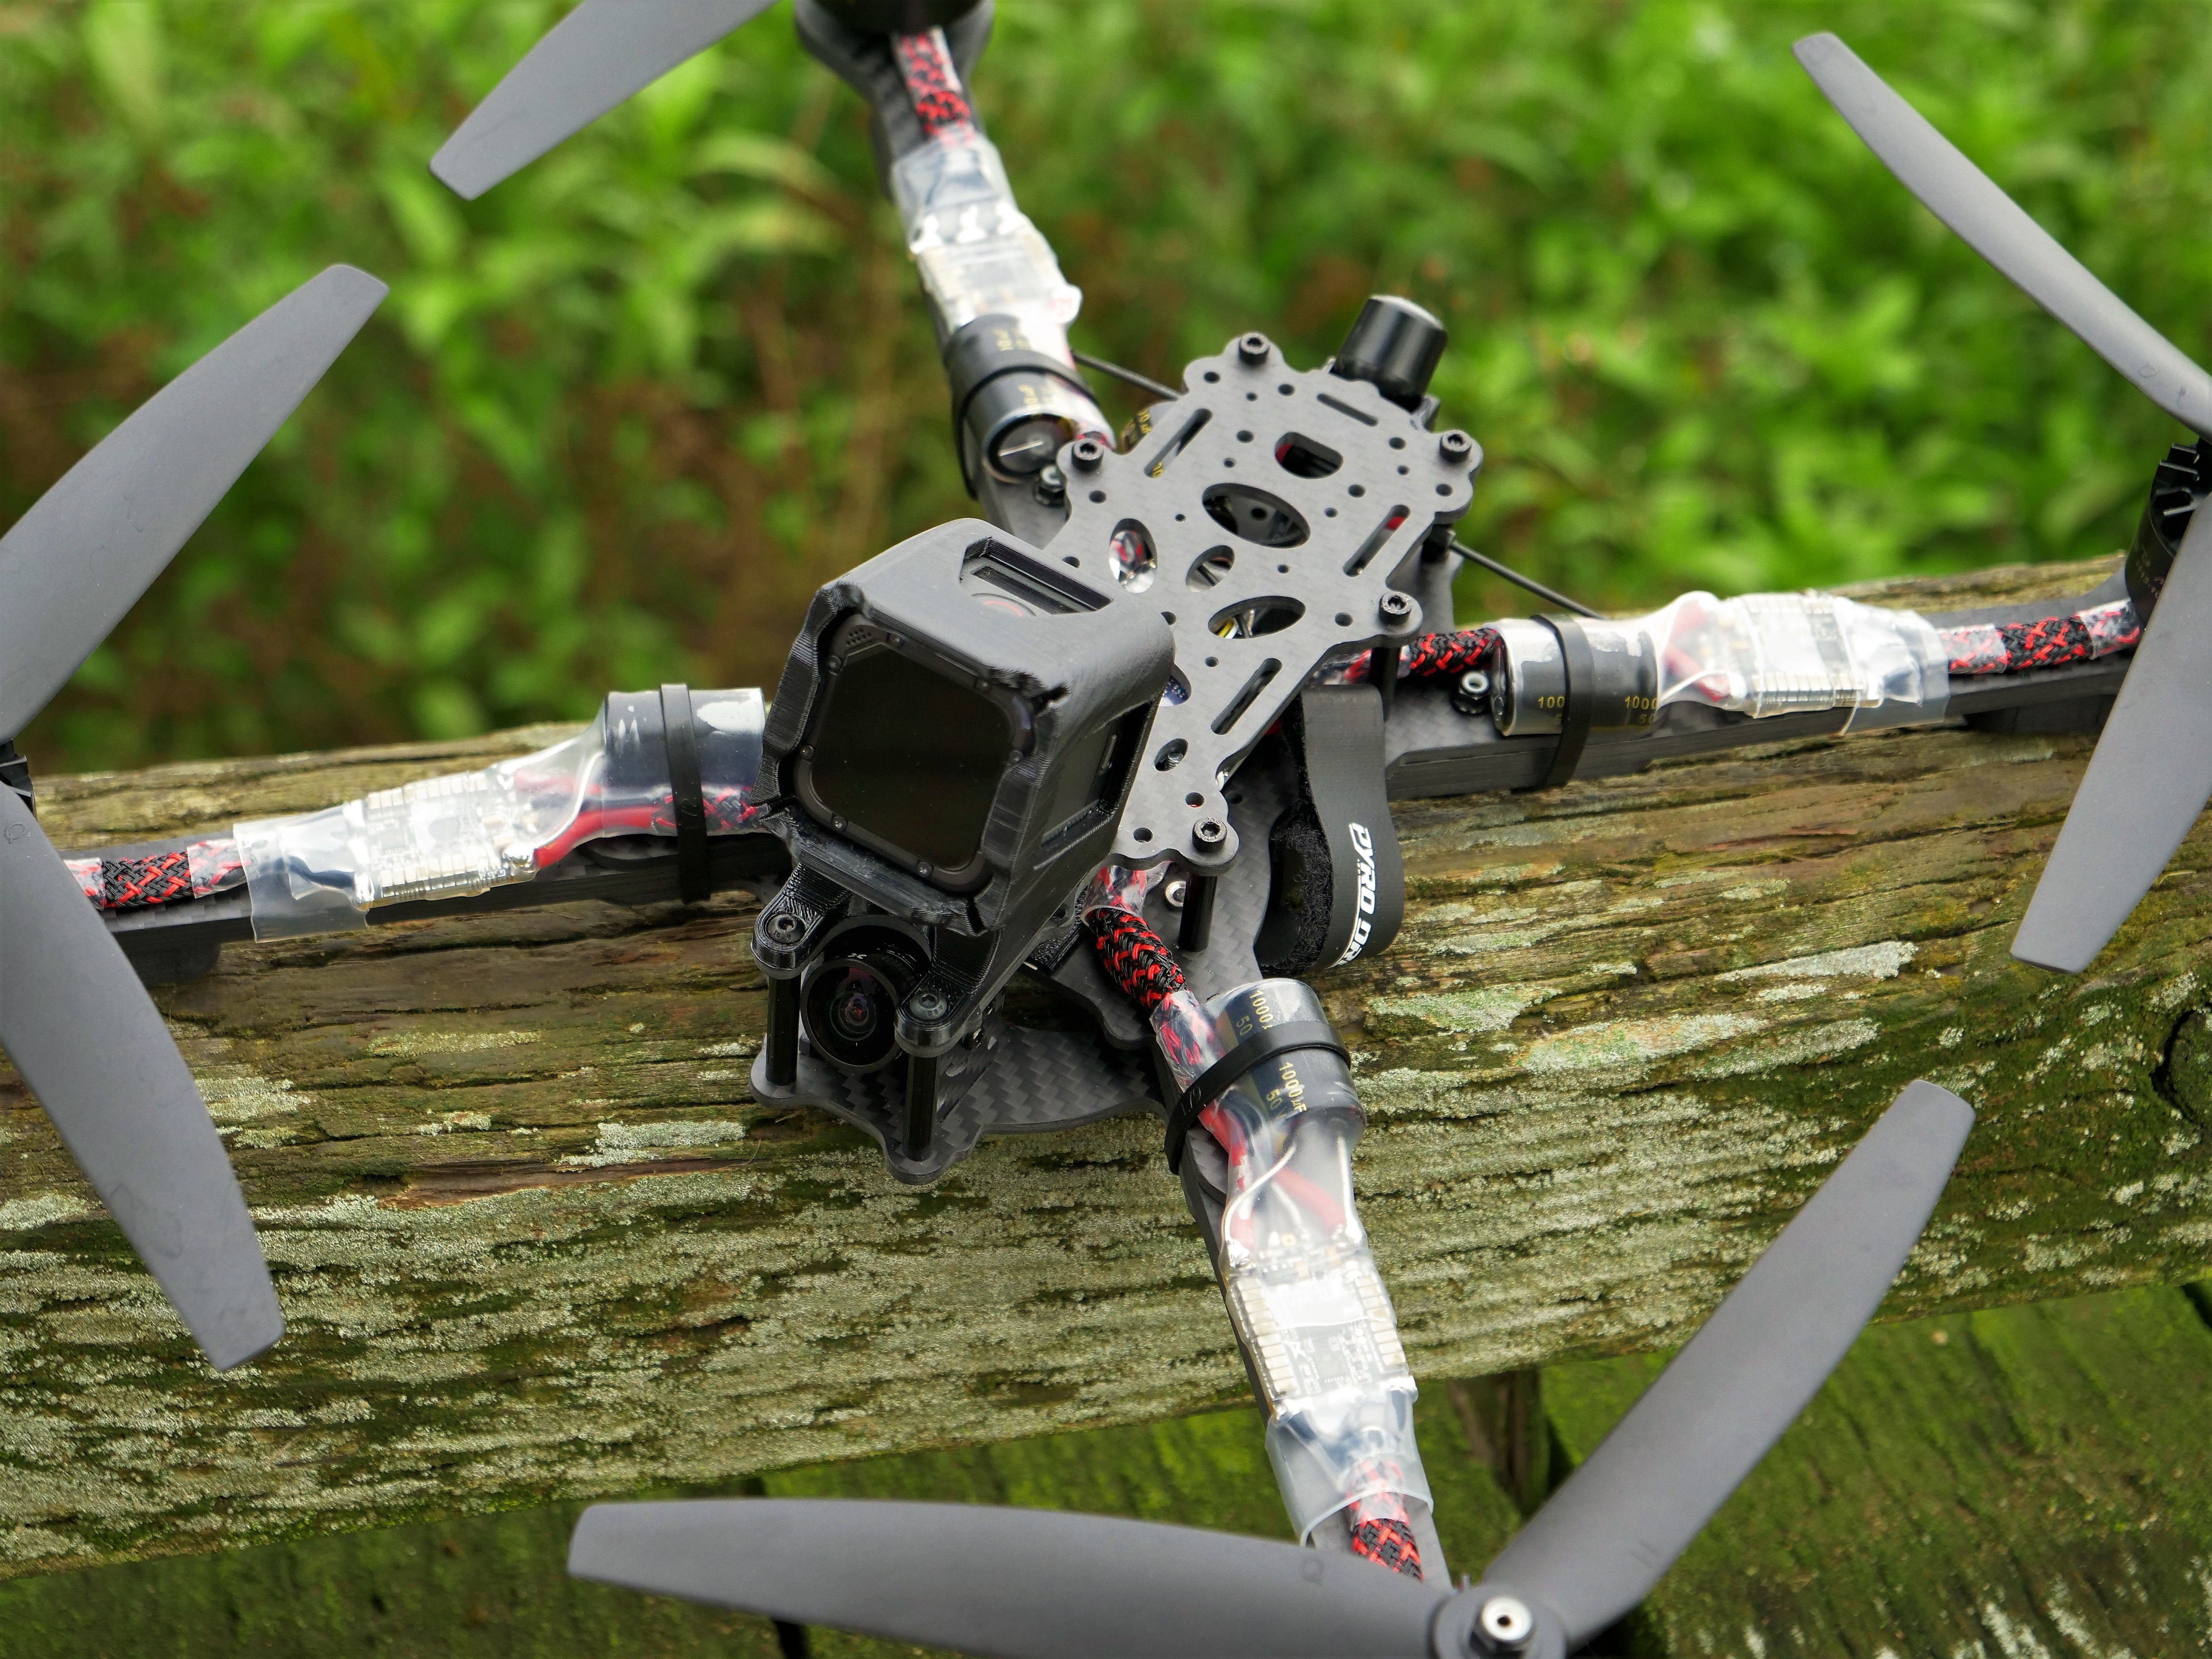 10 inch quadcopter frame